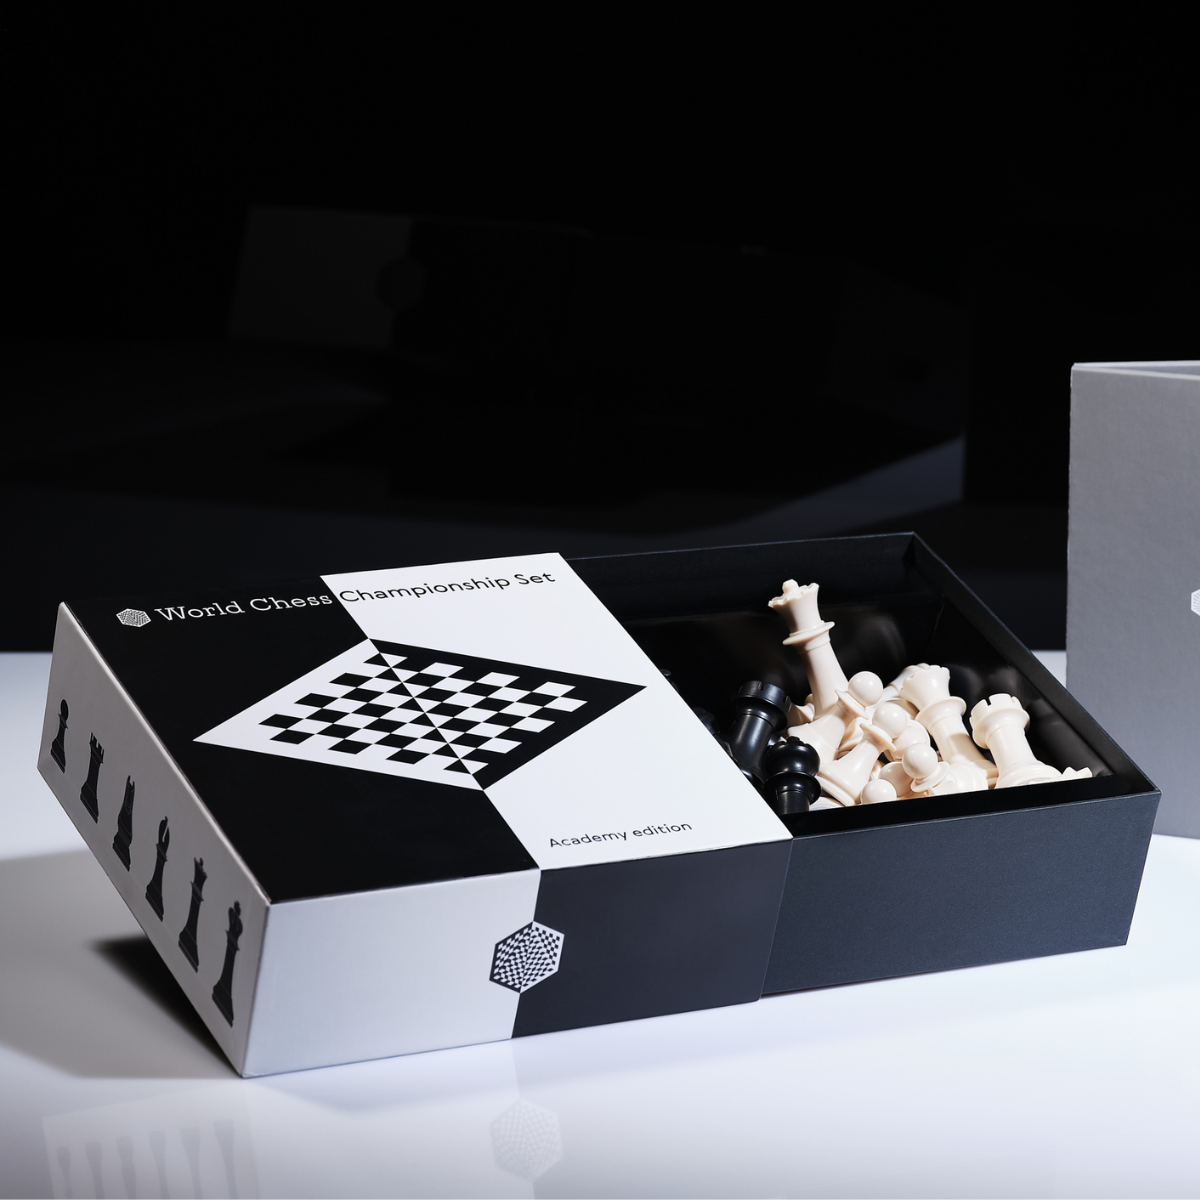 Komplett schackspel i VM-design